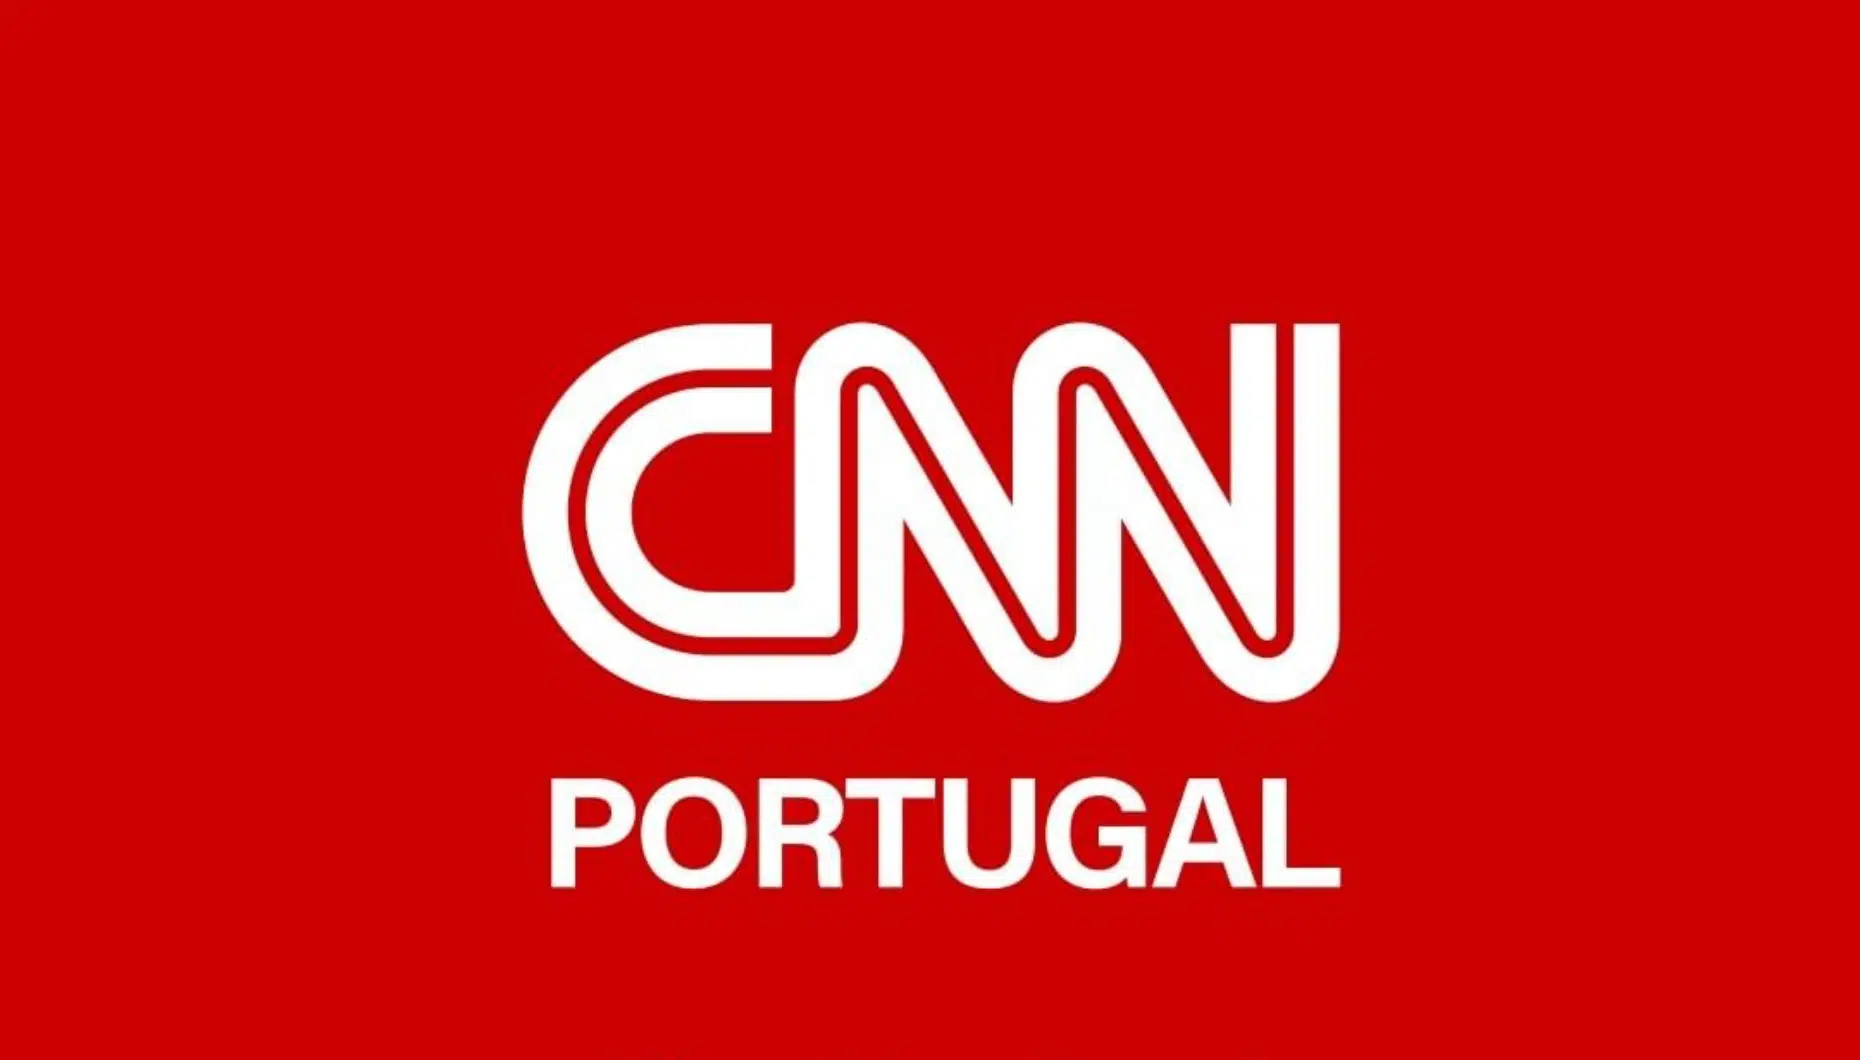 Cnn Portugal